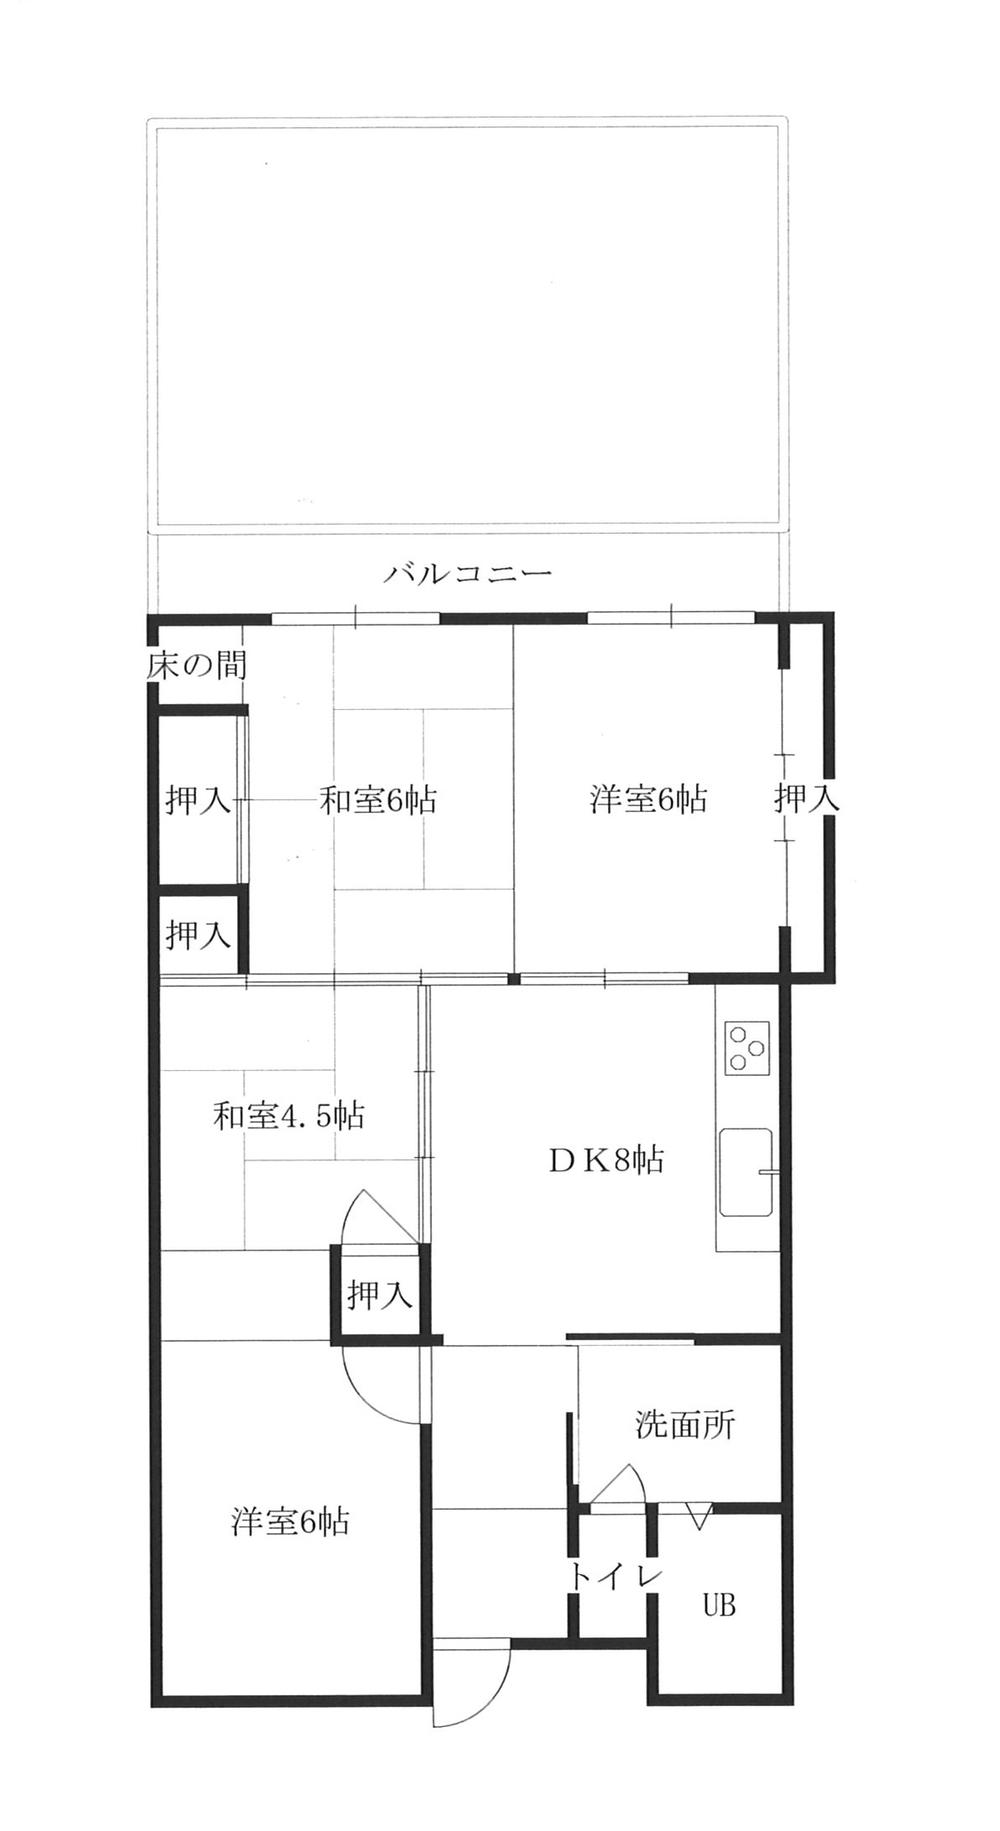 Floor plan. 4DK, Price 6 million yen, Occupied area 64.14 sq m